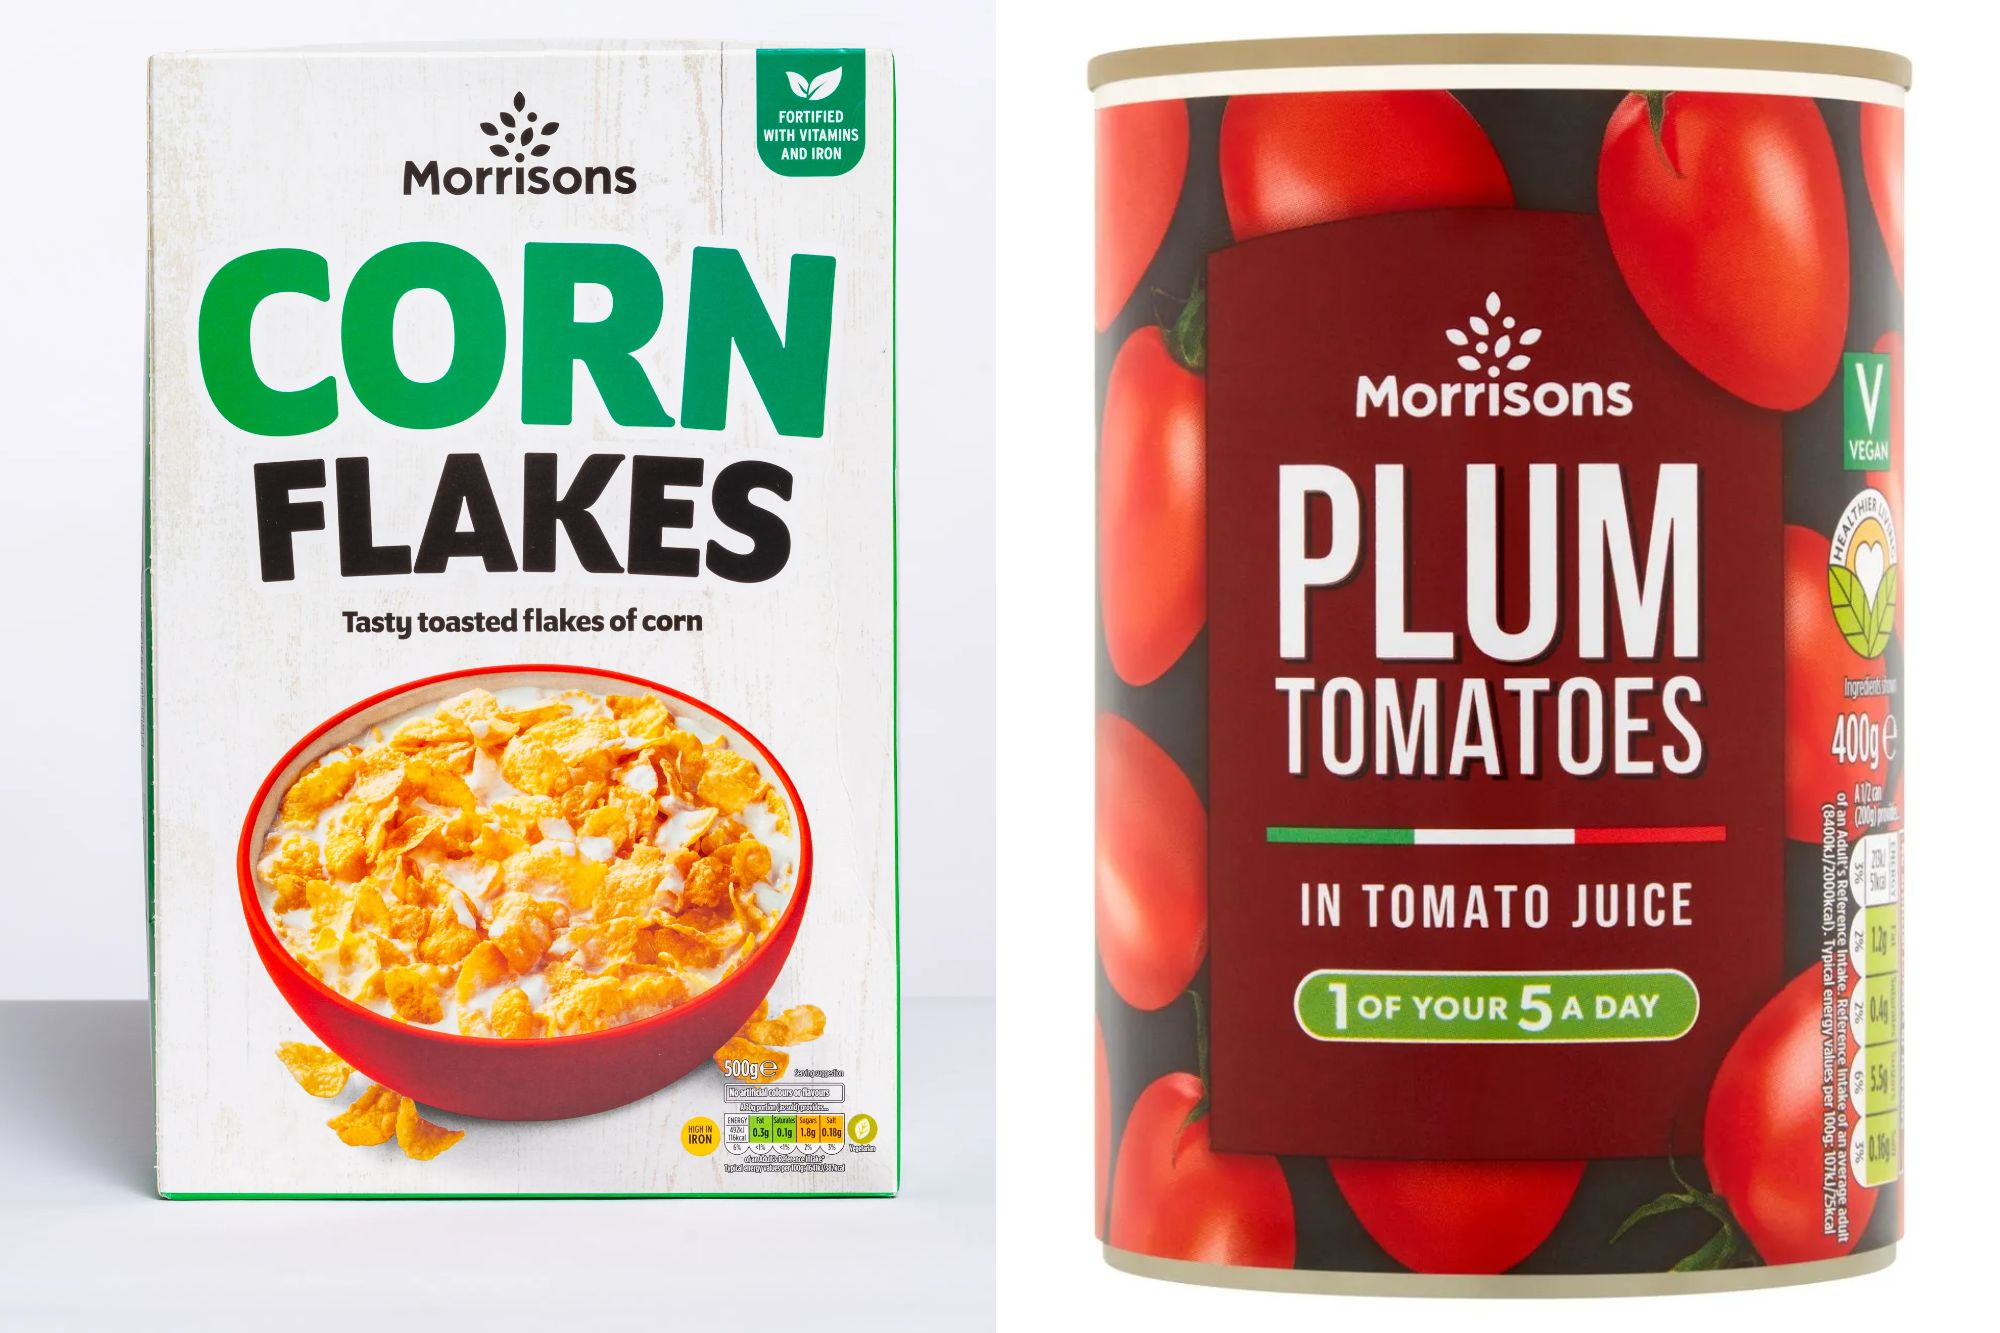 Morrisons hat versprochen, Aldi bei 200 Produkten von Cornflakes bis hin zu Tomatenkonserven gleichzuziehen